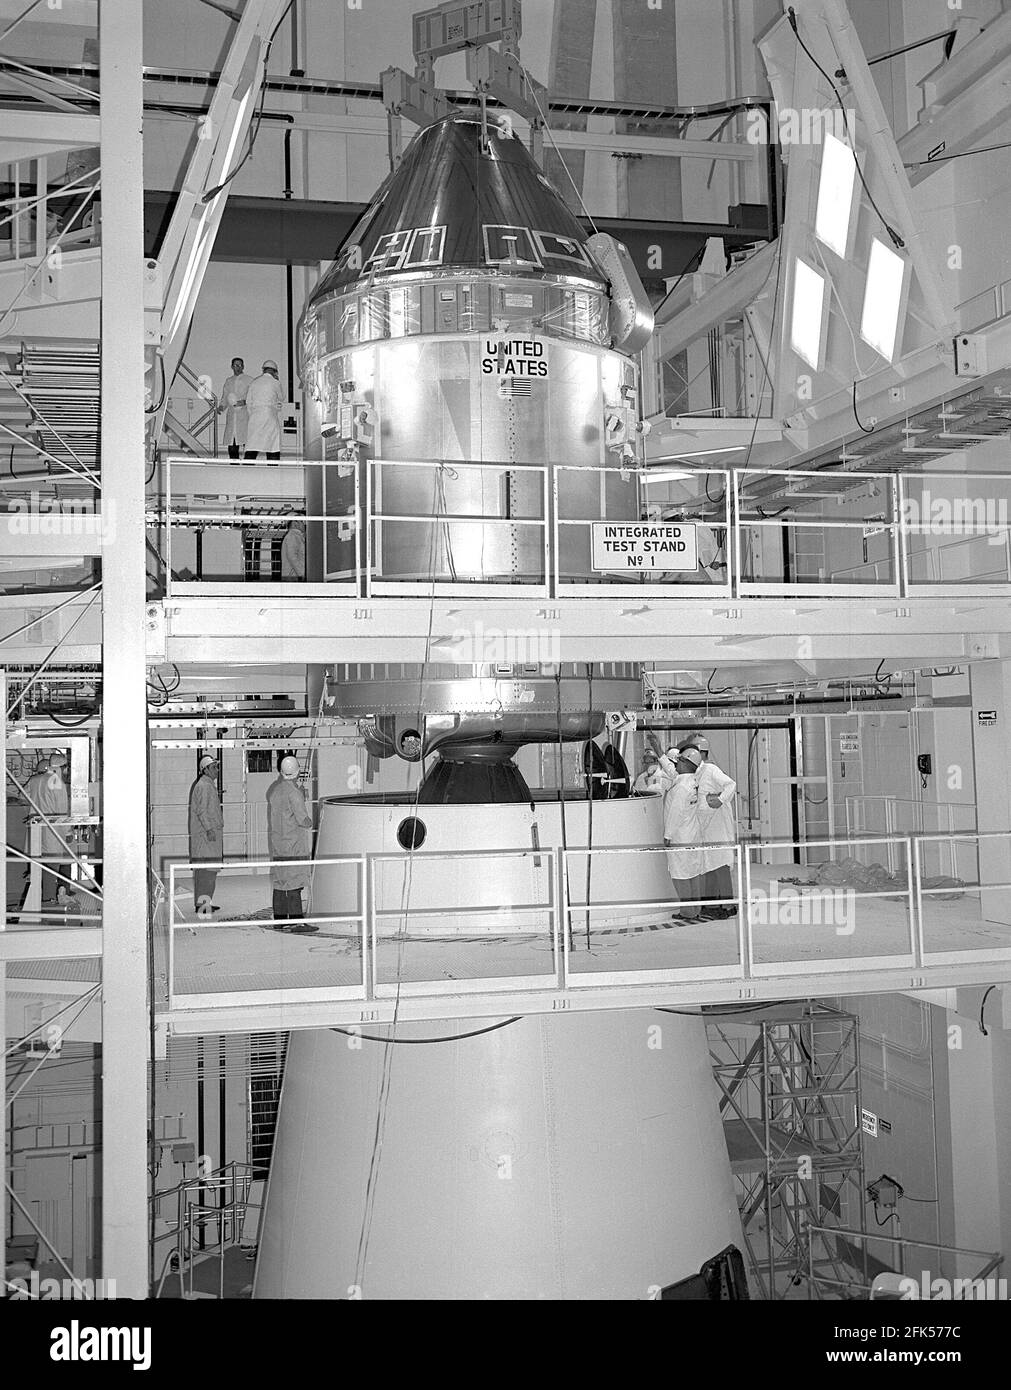 Cape Canaveral, FL - (FILE) -- il modulo di comando/servizio Apollo 11 (CSM) sono stati accoppiati all'adattatore del modulo Lunar Saturn V nell'edificio di assemblaggio del veicolo presso il Kennedy Space Center il 11 aprile 1969.Credit: NASA via CNP. | utilizzo in tutto il mondo Foto Stock